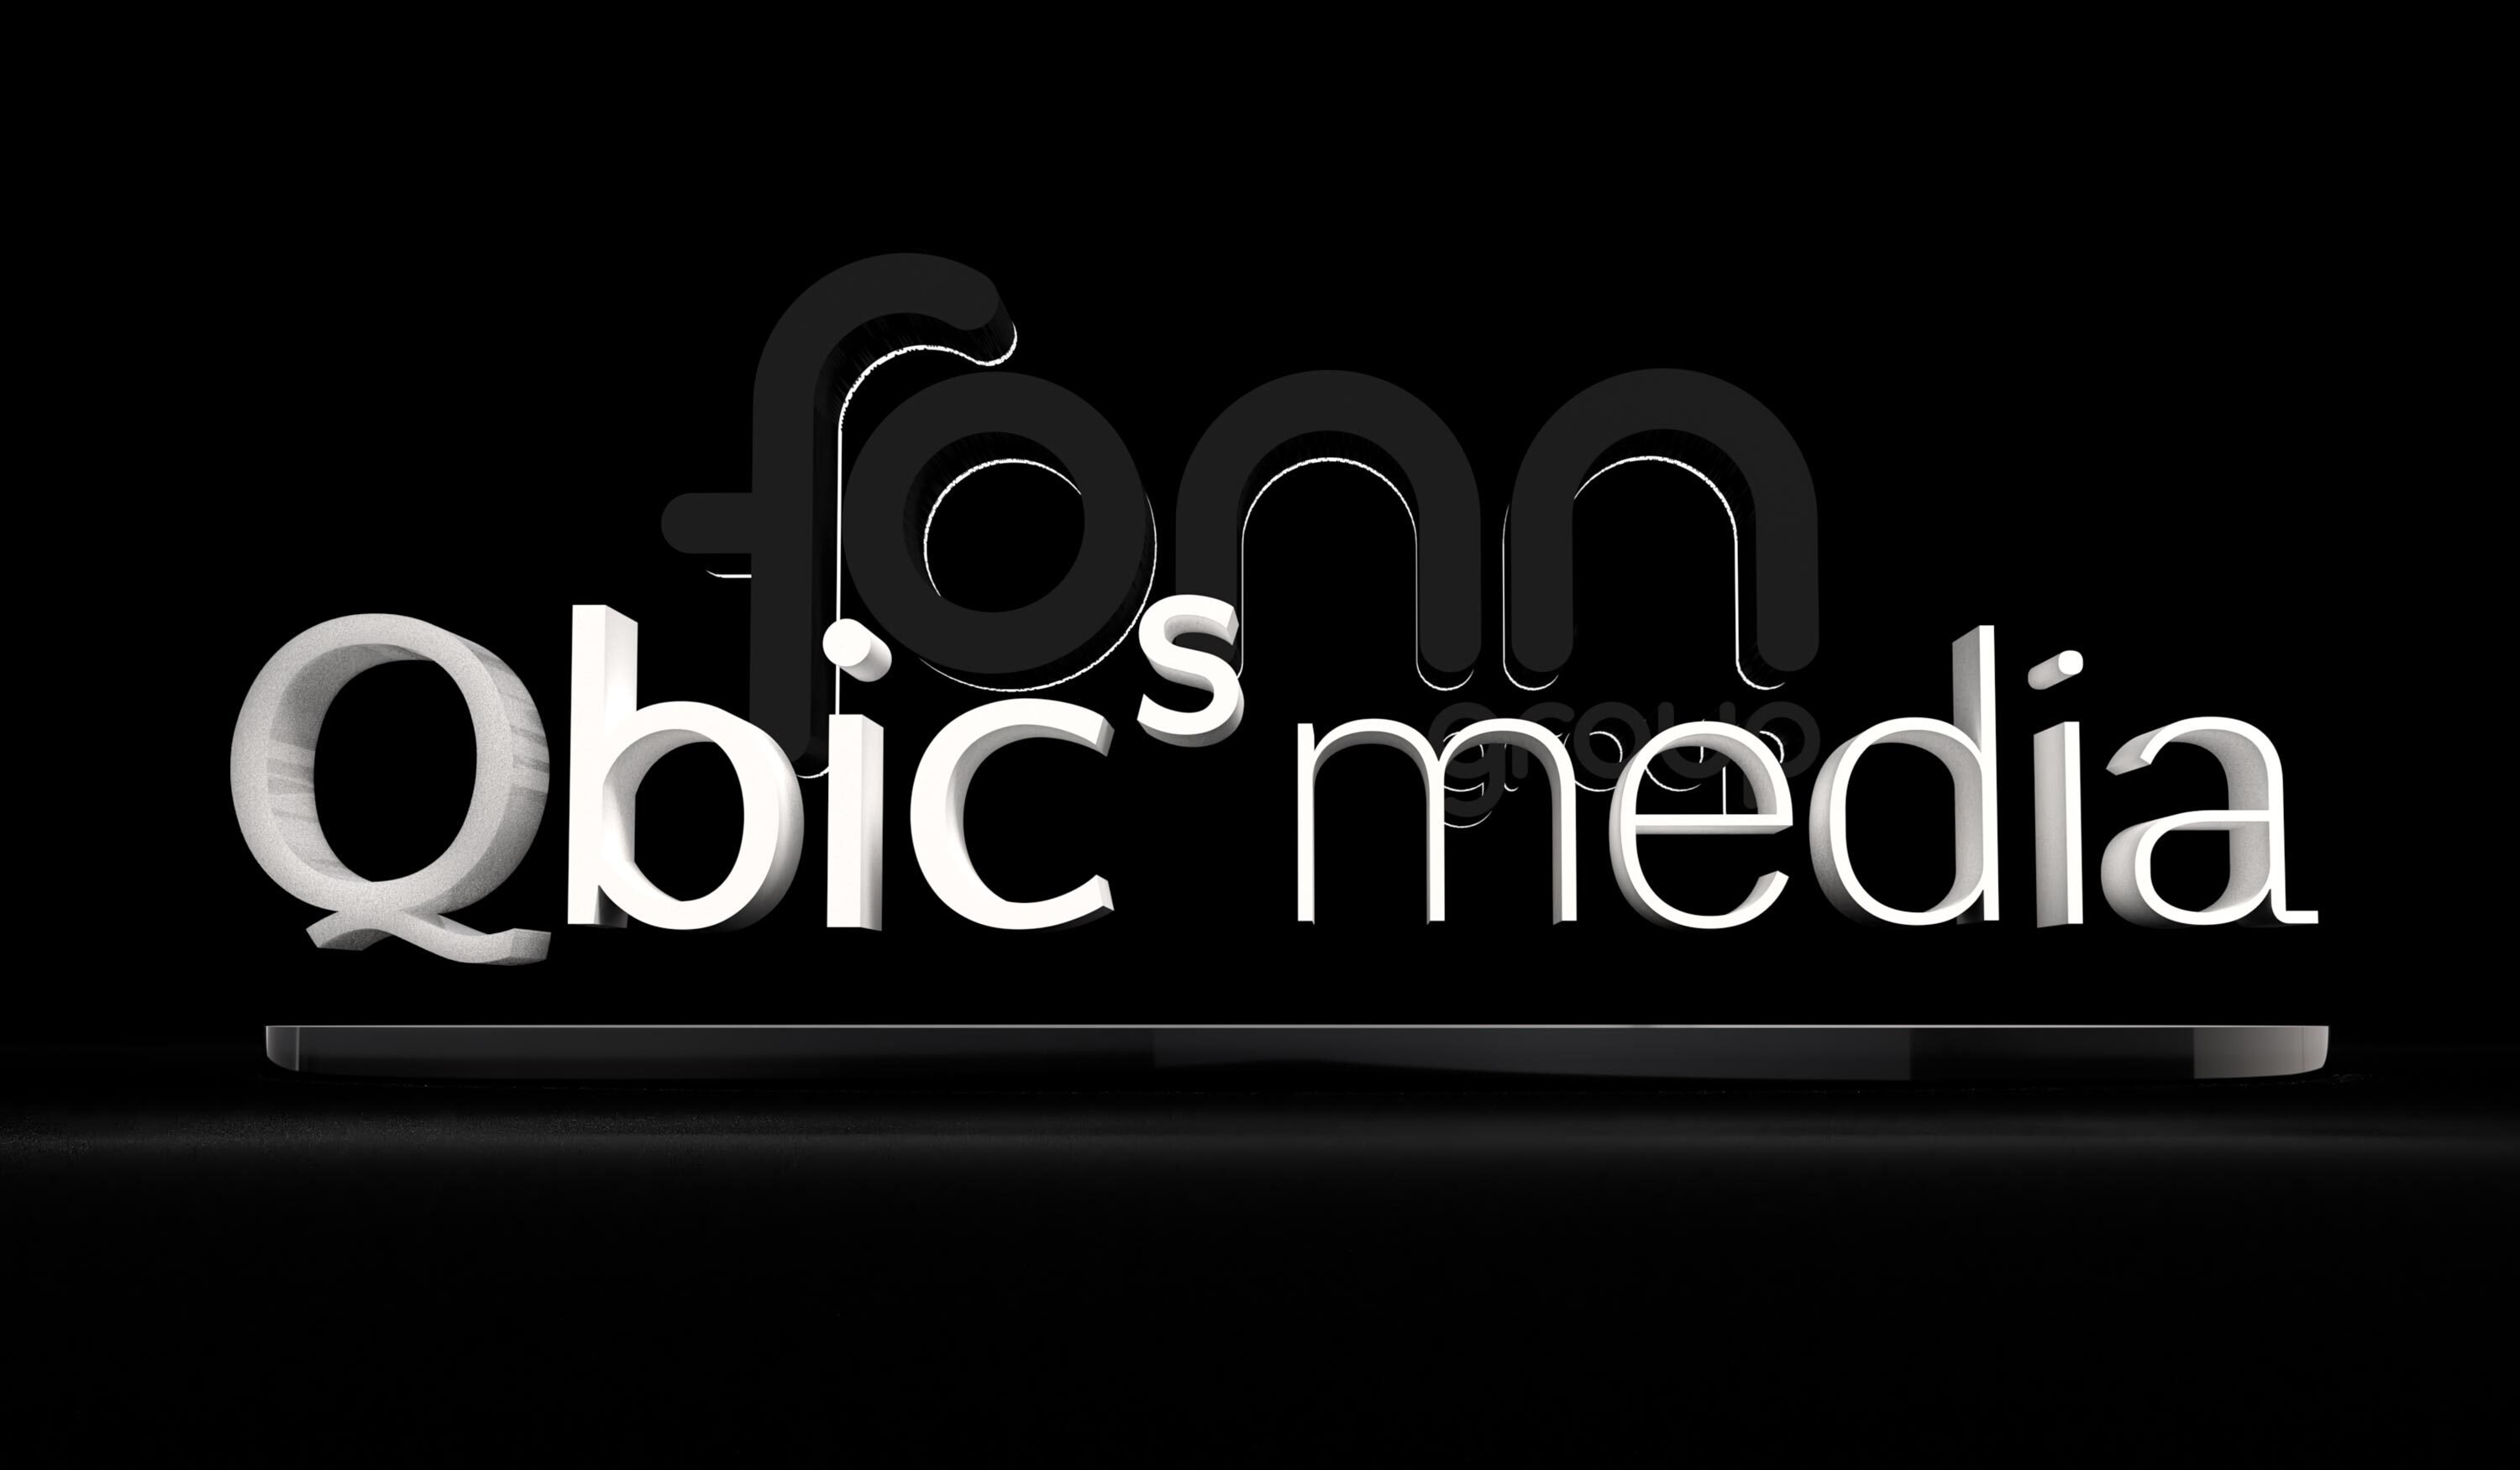 Fonn Group acquires Qbics media